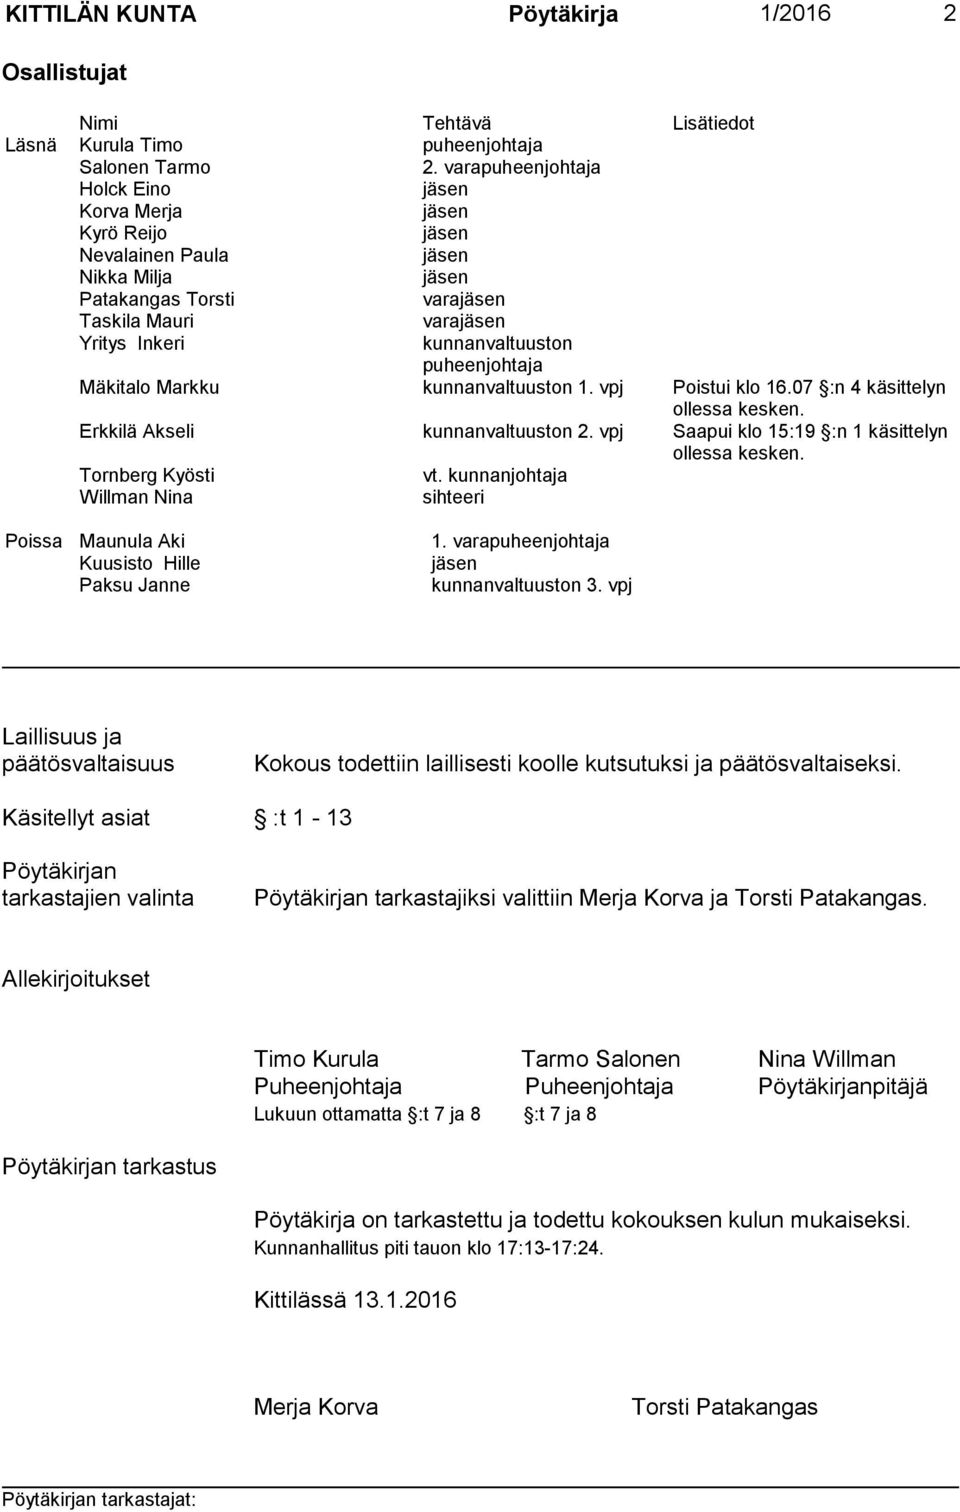 puheenjohtaja Mäkitalo Markku kunnanvaltuuston 1. vpj Poistui klo 16.07 :n 4 käsittelyn ollessa kesken. Erkkilä Akseli kunnanvaltuuston 2. vpj Saapui klo 15:19 :n 1 käsittelyn ollessa kesken.